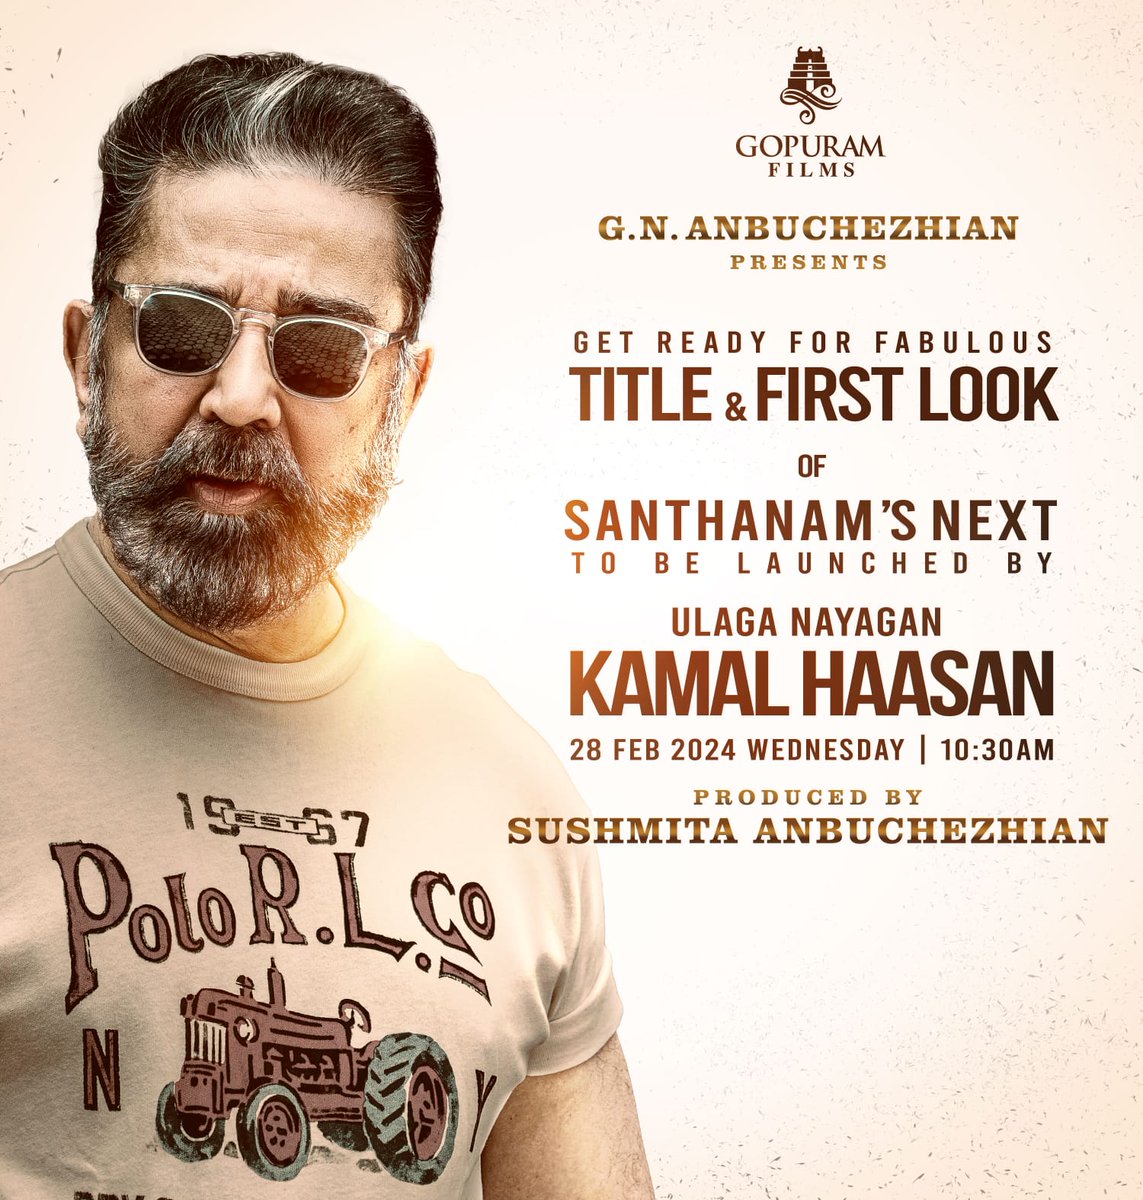 #UlagaNayagan @ikamalhaasan will release the Title & 1st Look of @gopuramfilms #ProdNo5 Tomorrow (28th Feb) at 10:30AM🕥

Presented by #GNAnbuchezhian, Produced by #SushmitaAnbuchezhian 

Starring @iamsanthanam & @Priyalaya_ubd 
Dir by @dirnanand

@Gopuram_Cinemas @immancomposer